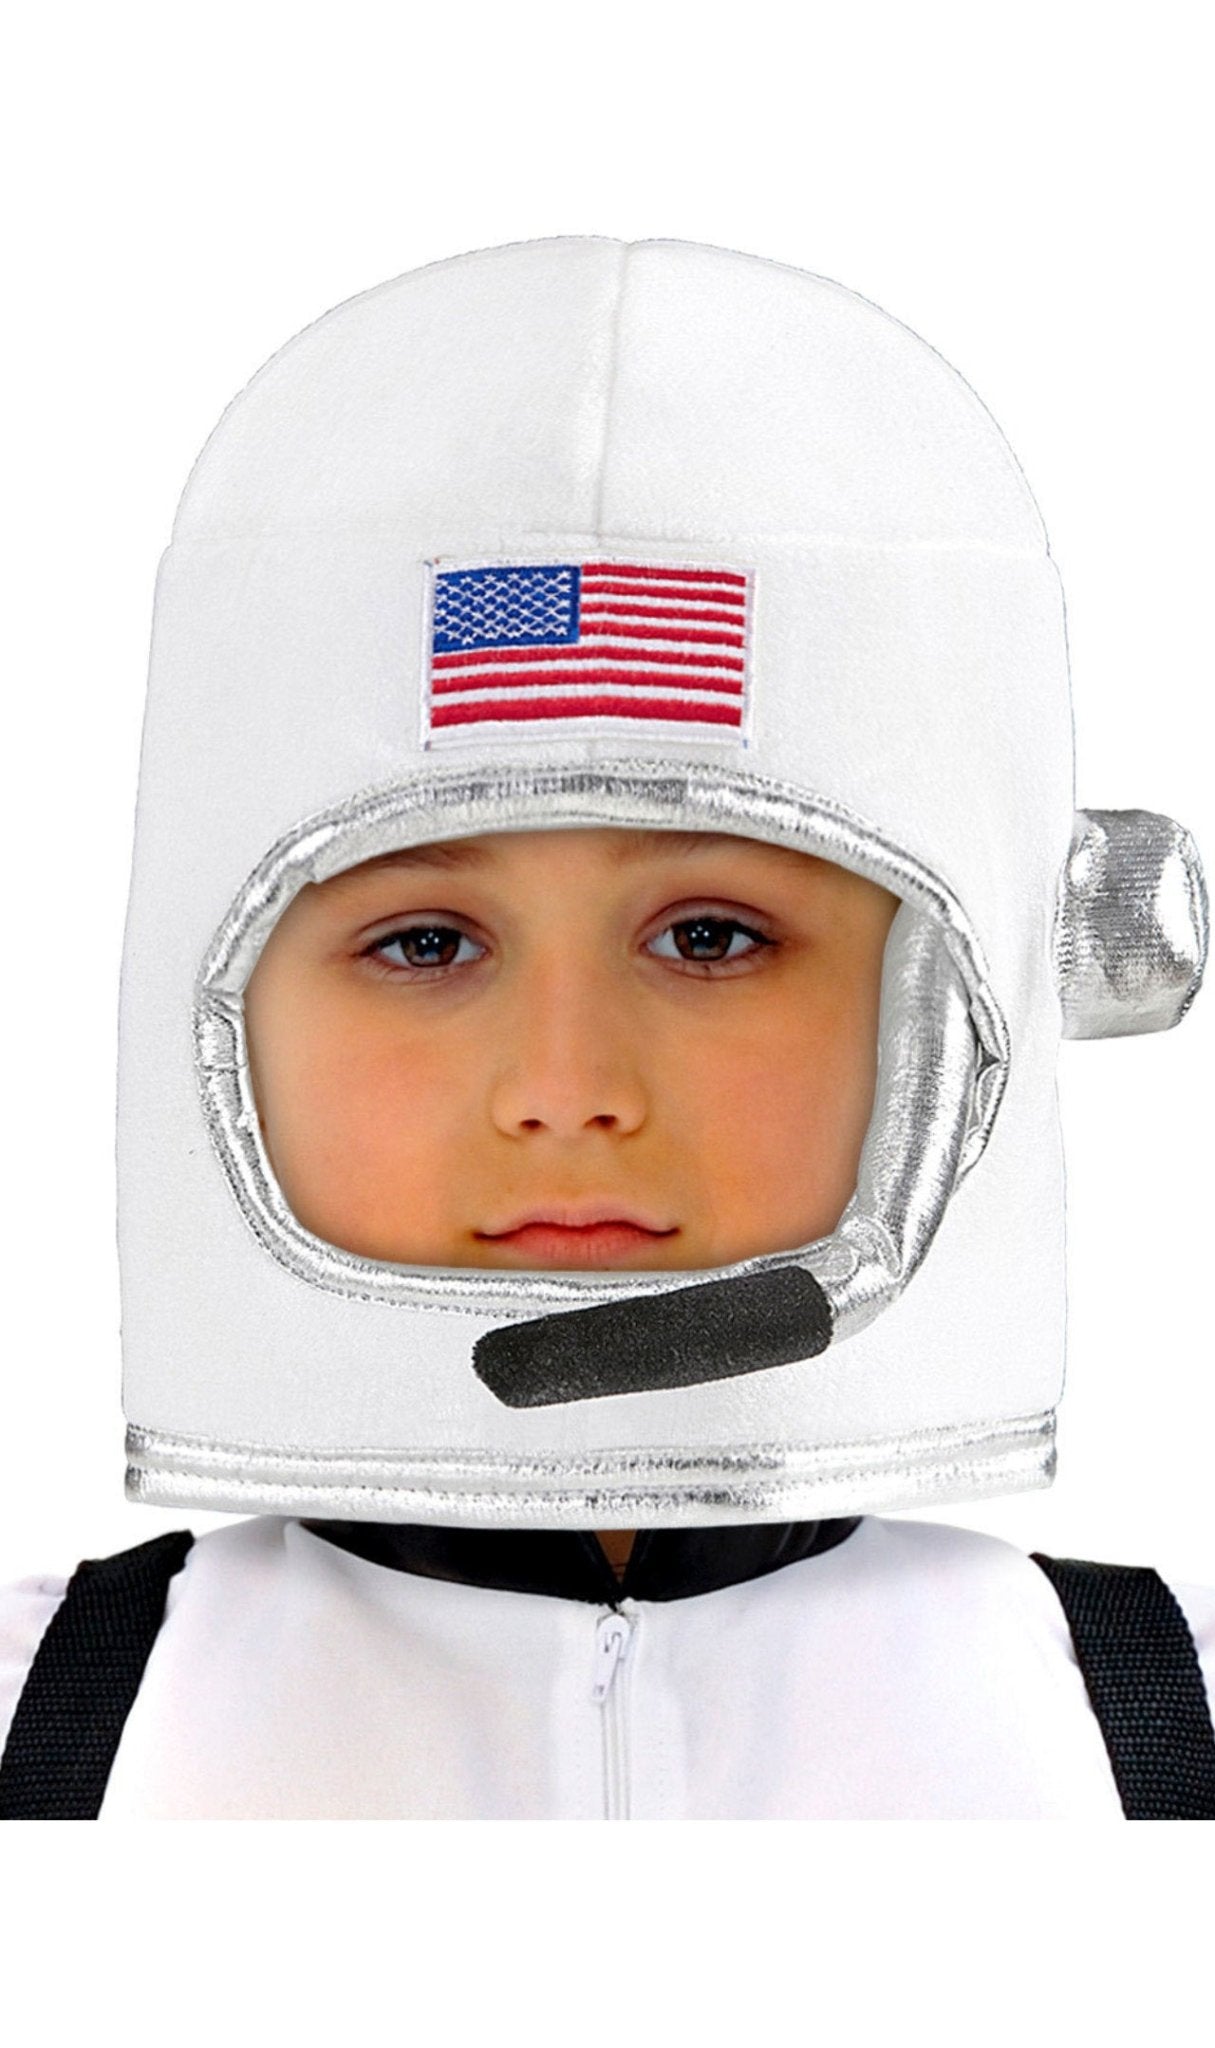 Casco da astronauta cosmonauta spaziale bambino in plastica